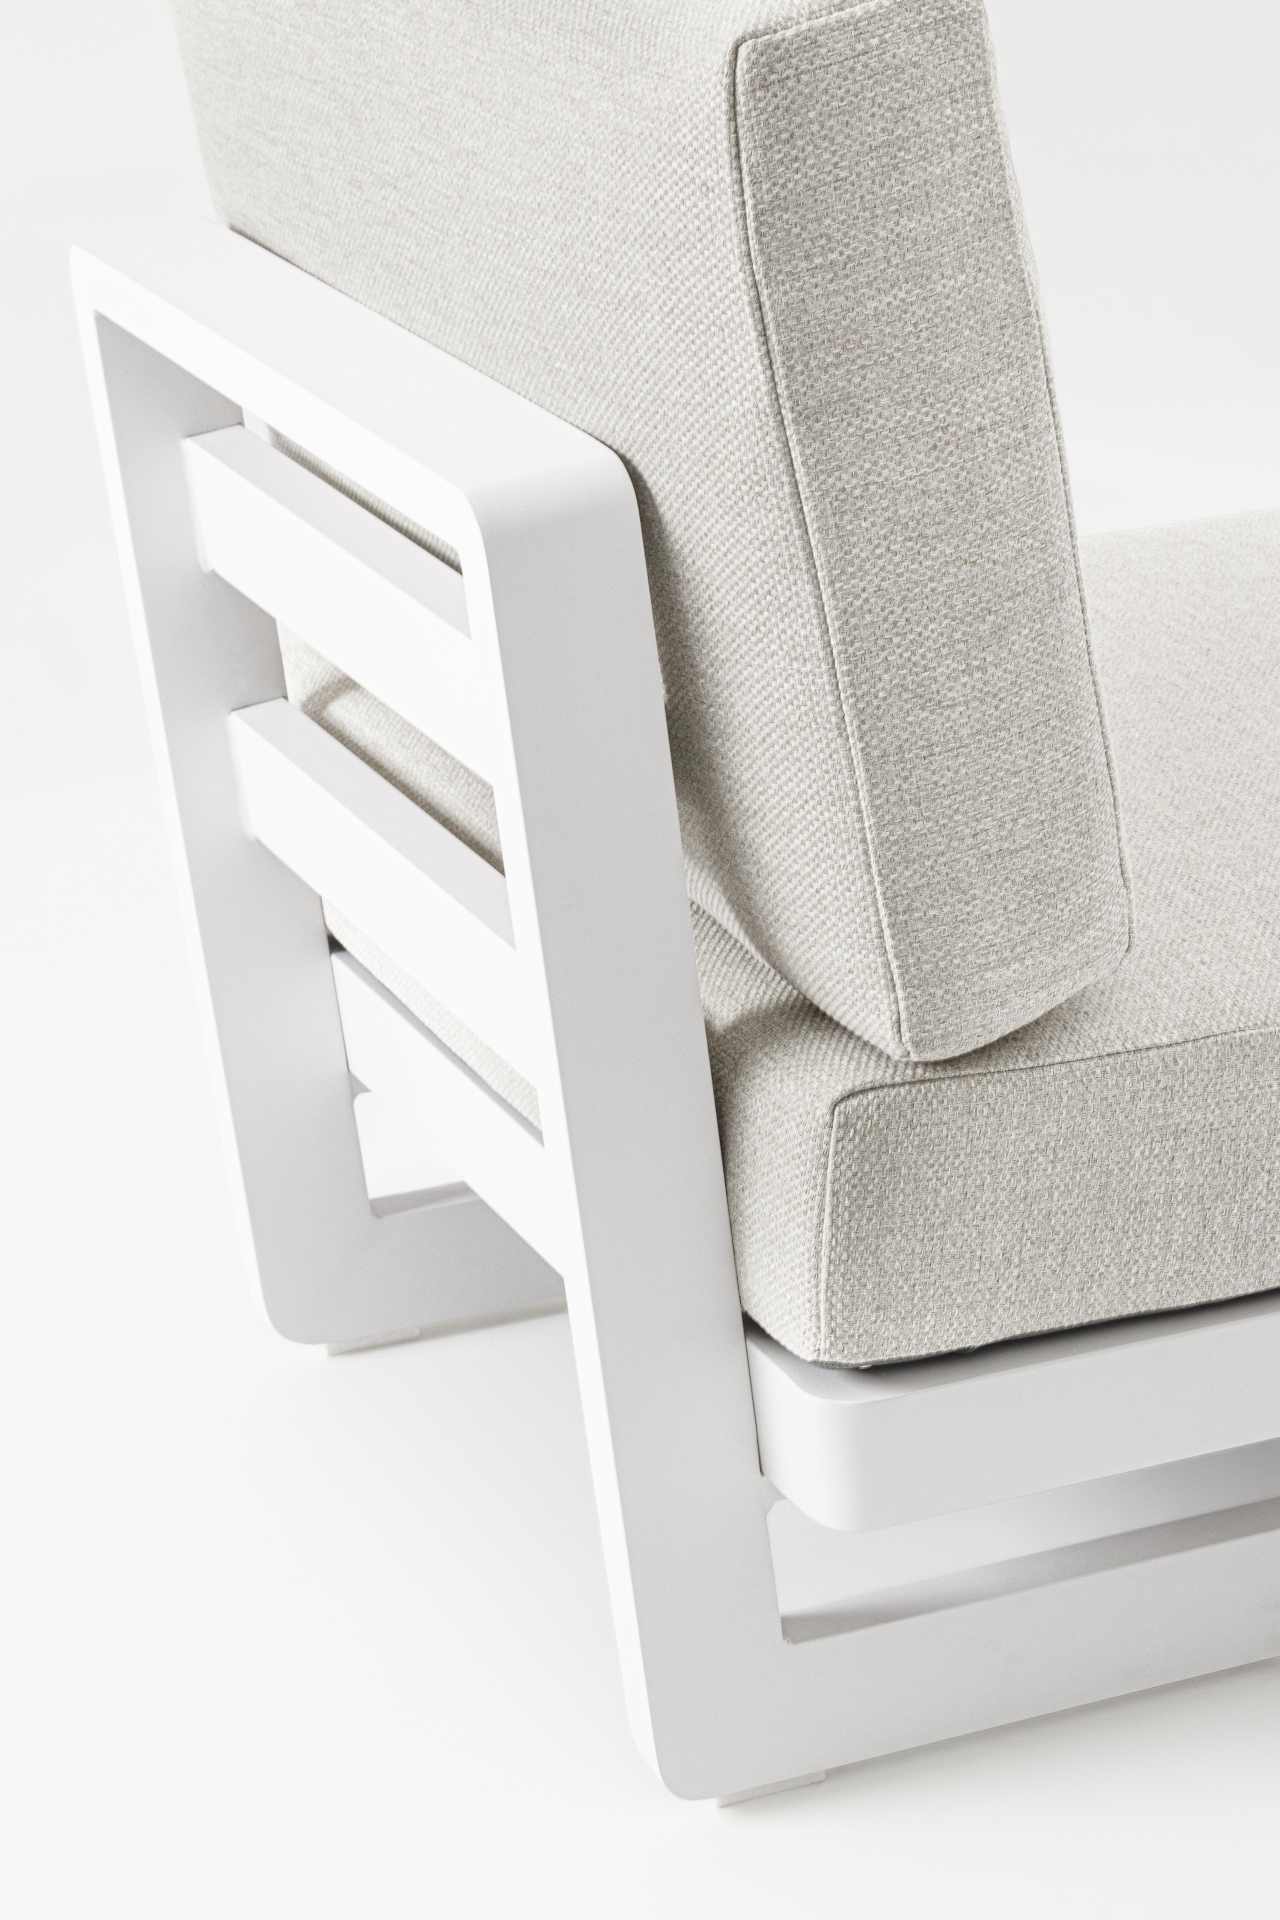 Der Gartensessel Infinity überzeugt mit seinem modernen Design. Gefertigt wurde es aus Olefin-Stoff, welcher einen grauen Farbton besitzt. Das Gestell ist aus Aluminium und hat eine weiße Farbe. Der Sessel verfügt über eine Sitzhöhe von 38 cm und ist für 